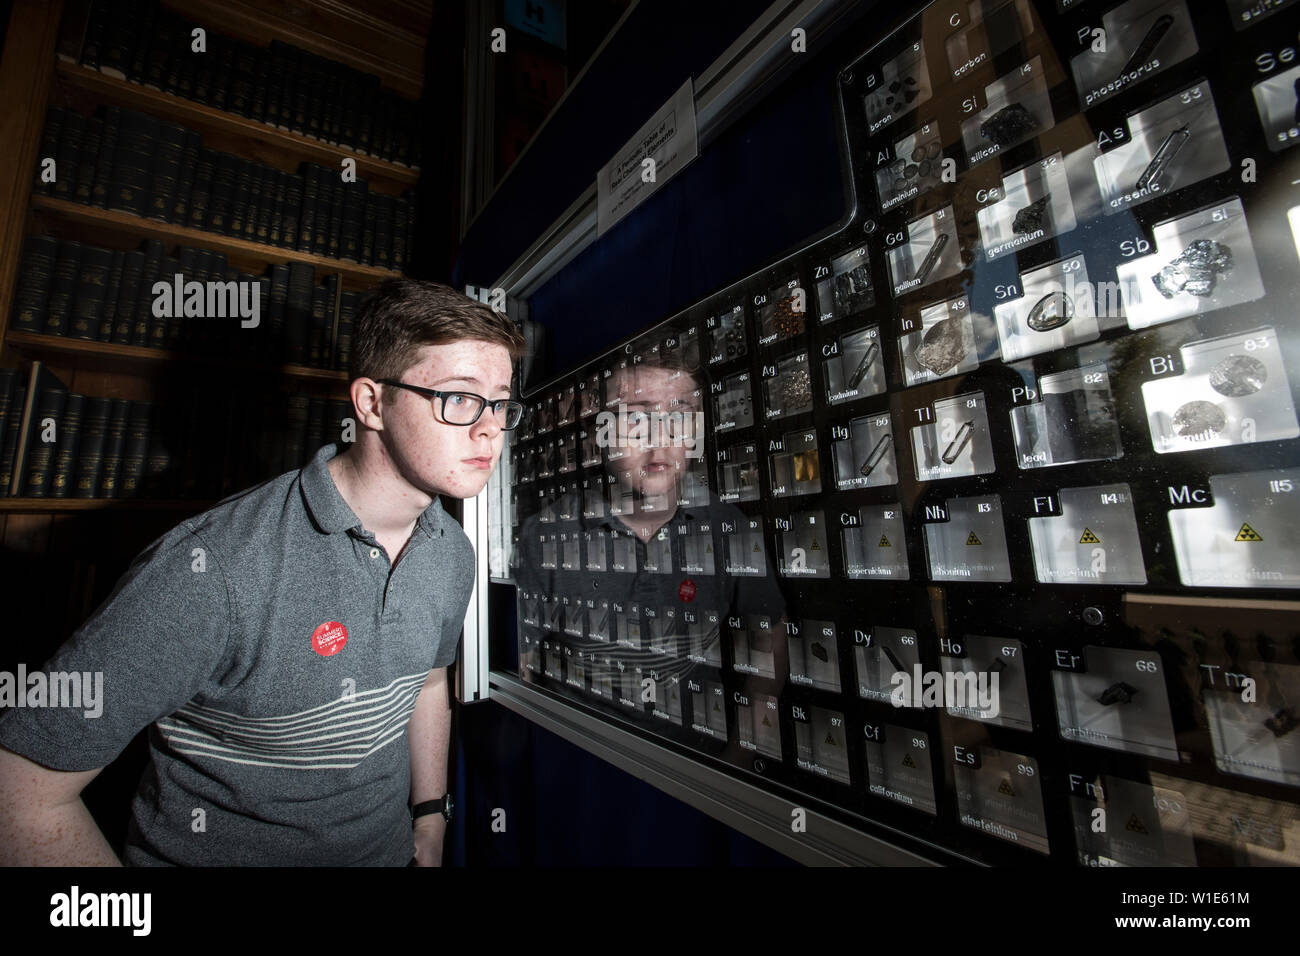 Royal Society Summer Science Ausstellung, ein junger Mann in einem Periodensystem der chemischen Elemente suchen, feiert das 150jährige Jubiläum in London. Stockfoto